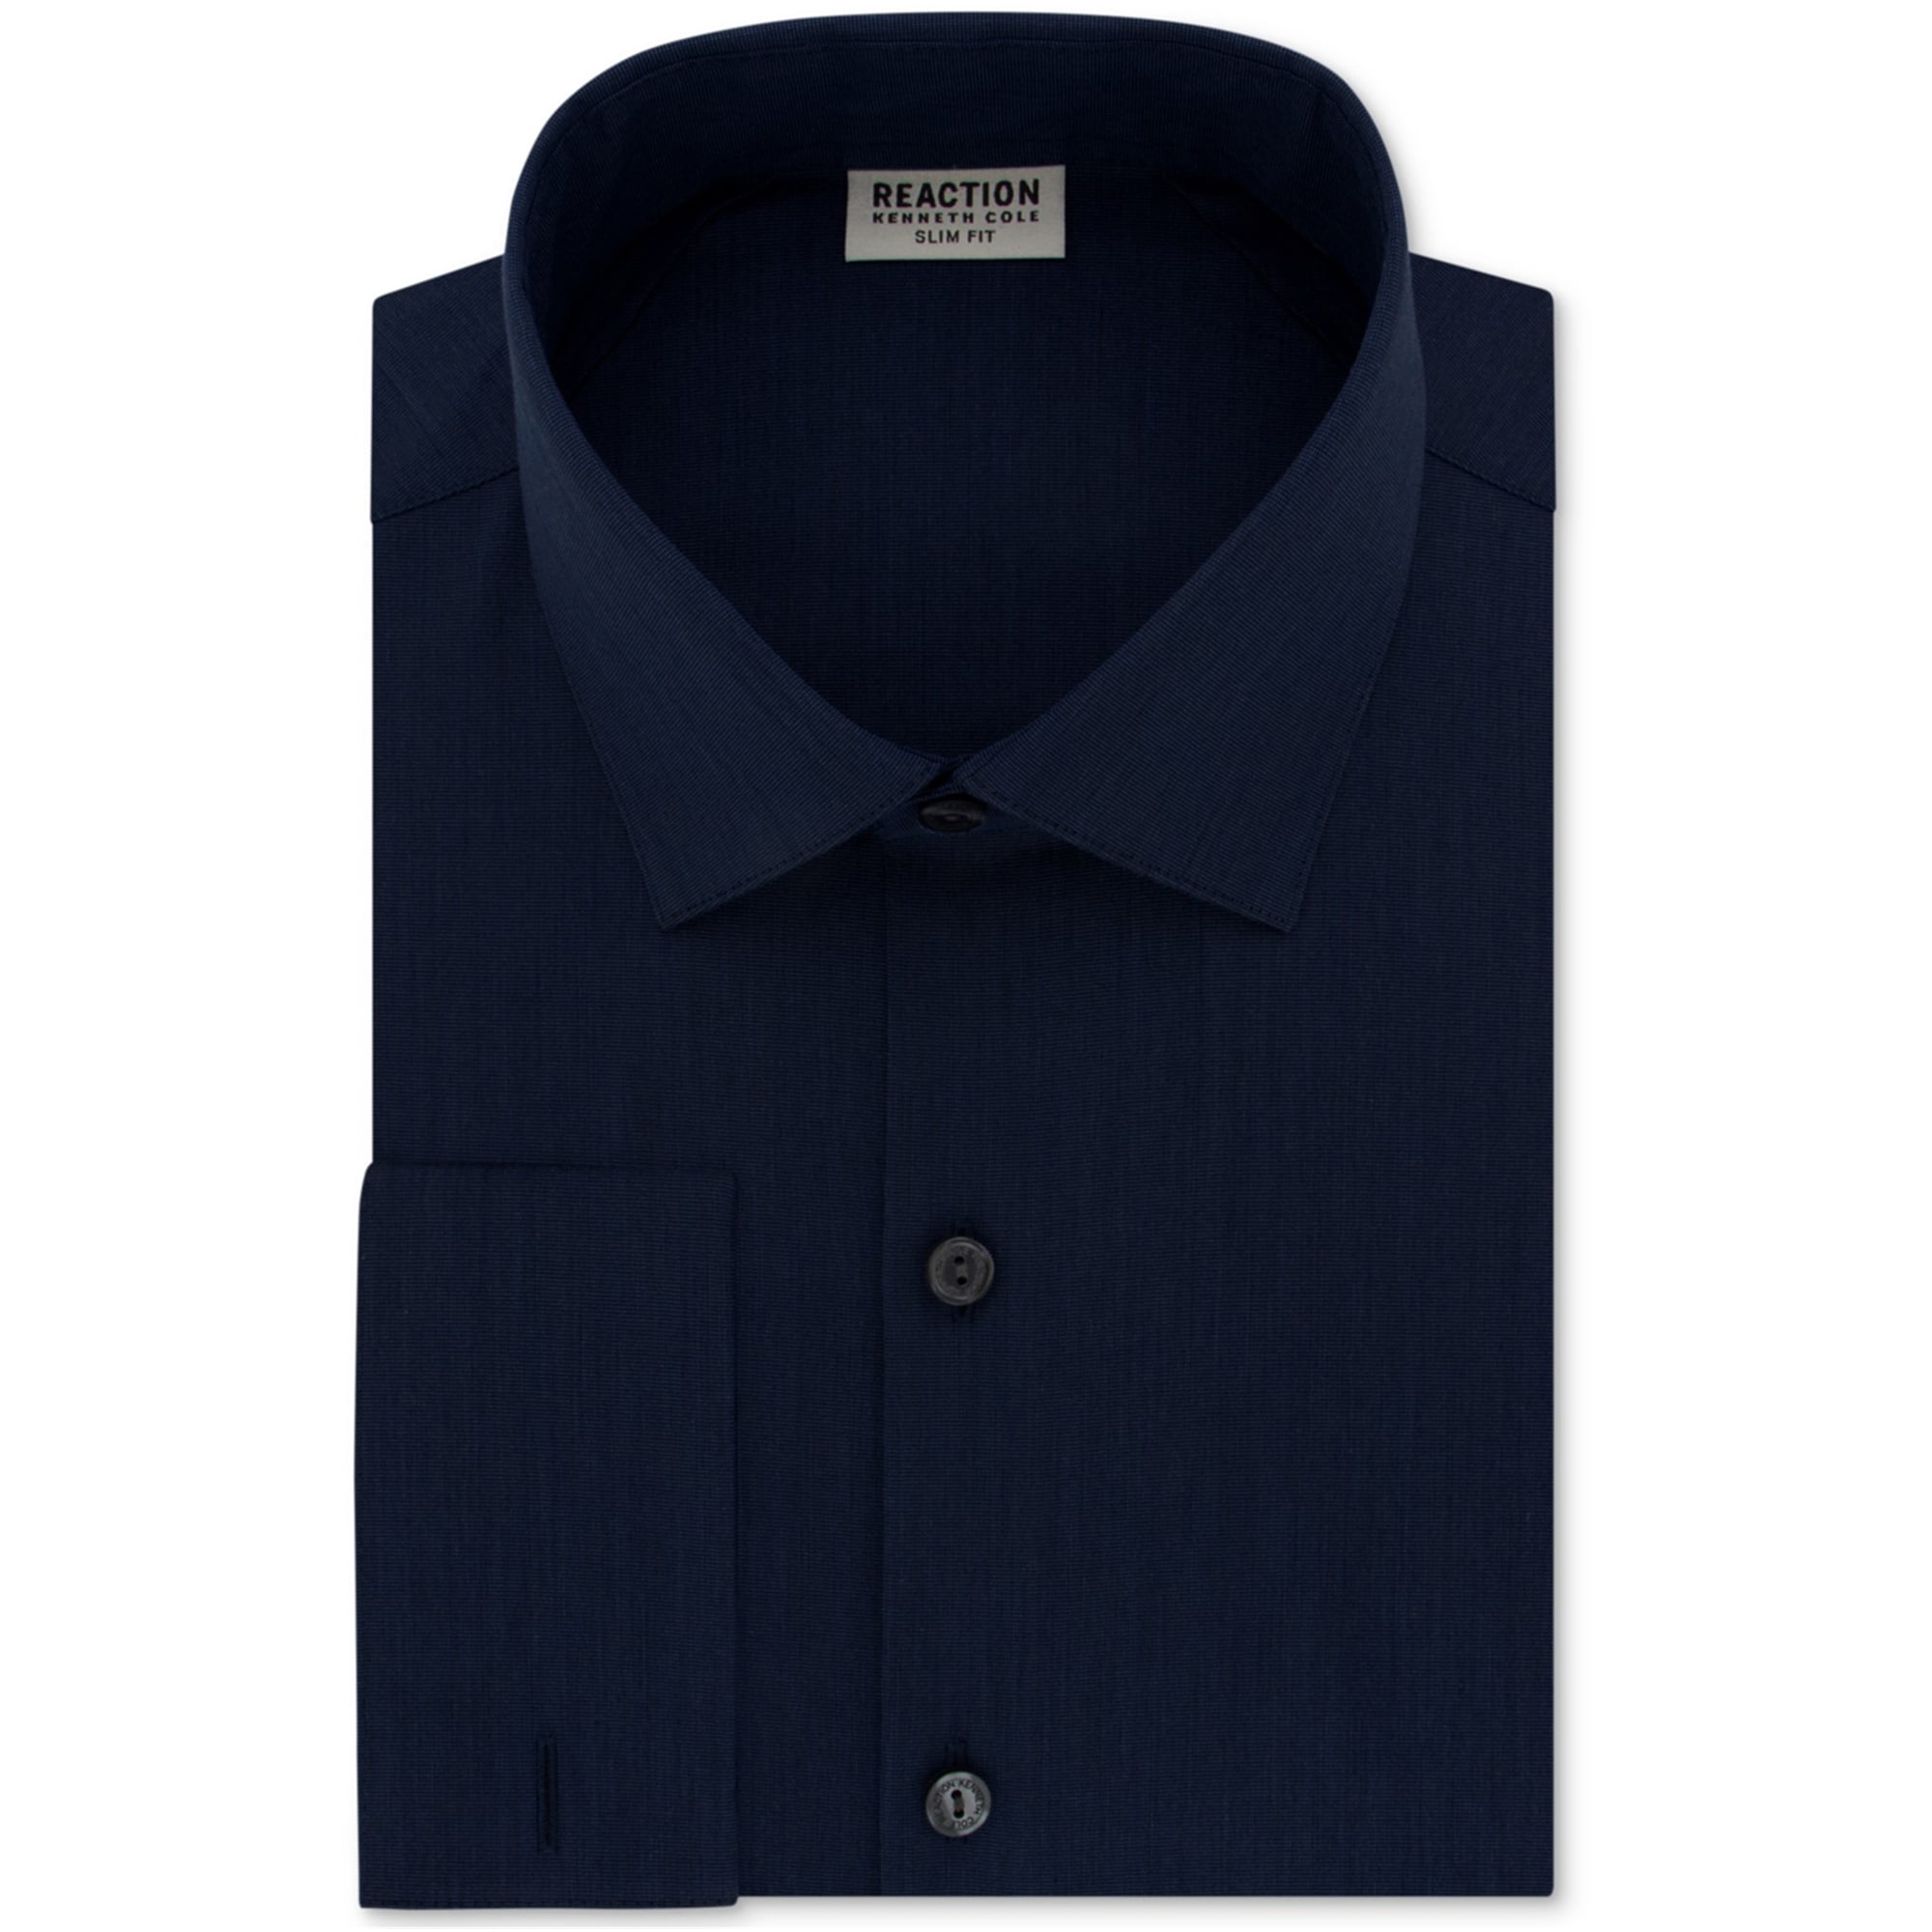 Kenneth Cole Men's Cotton Blend Techni-Cole Slim Fit Patterned Dress Shirt Blue 